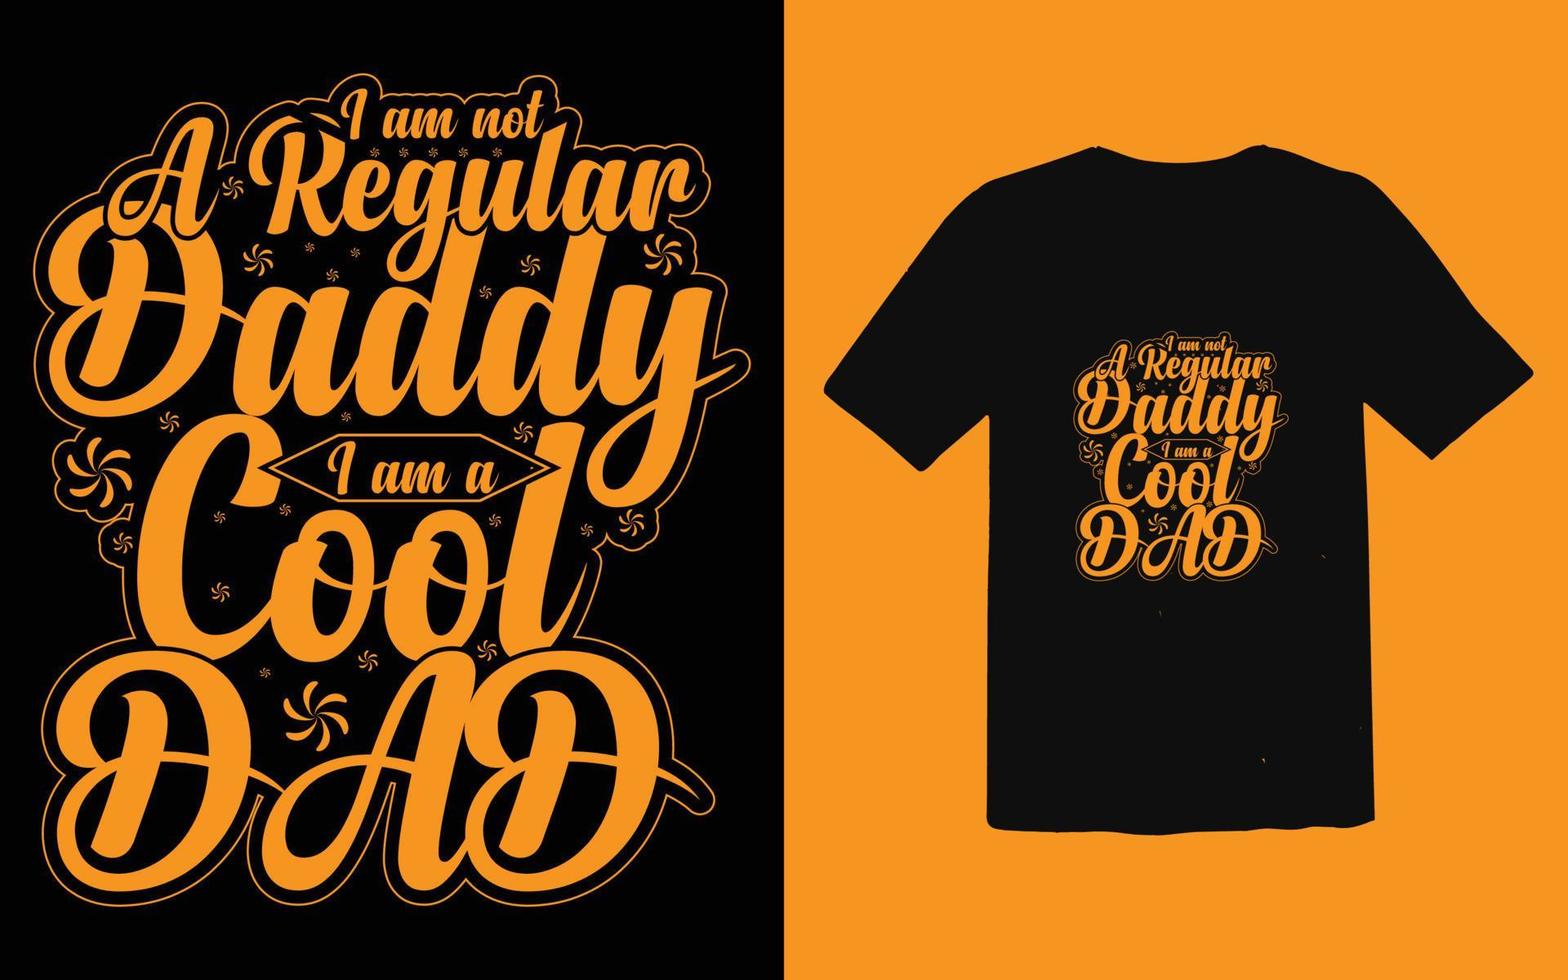 vecteur de conception de t-shirt typographique fête des pères, conception de t-shirt papa à la mode